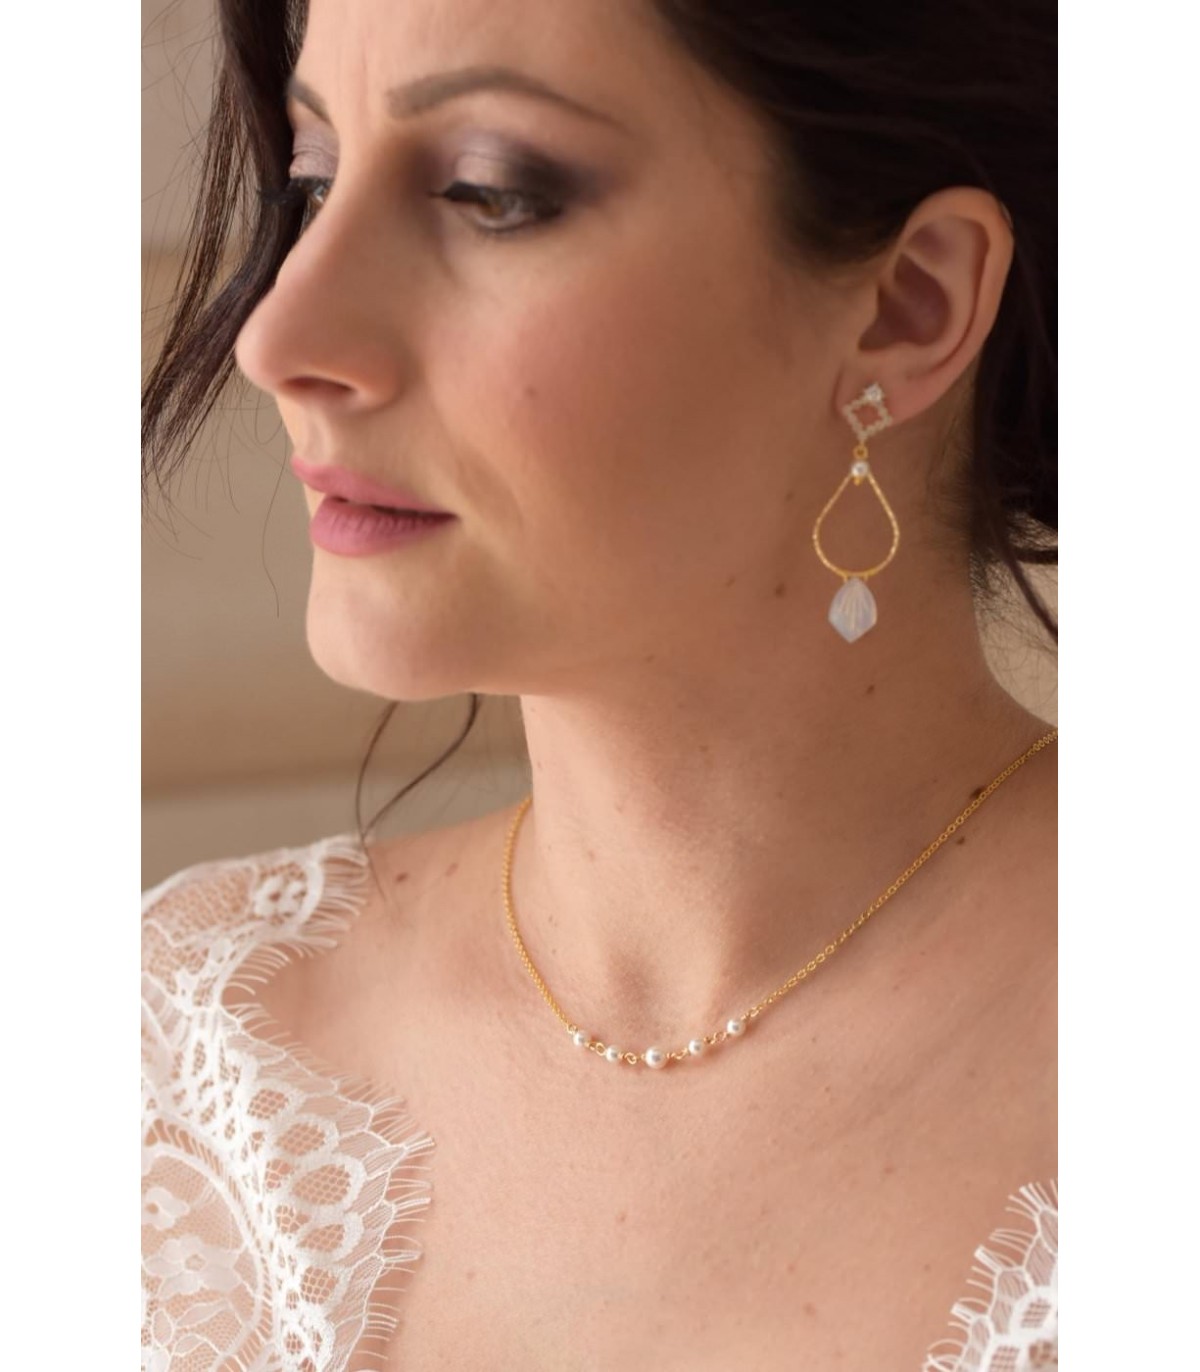 Collier de mariage minimaliste avec perles nacrées et fine chainette.